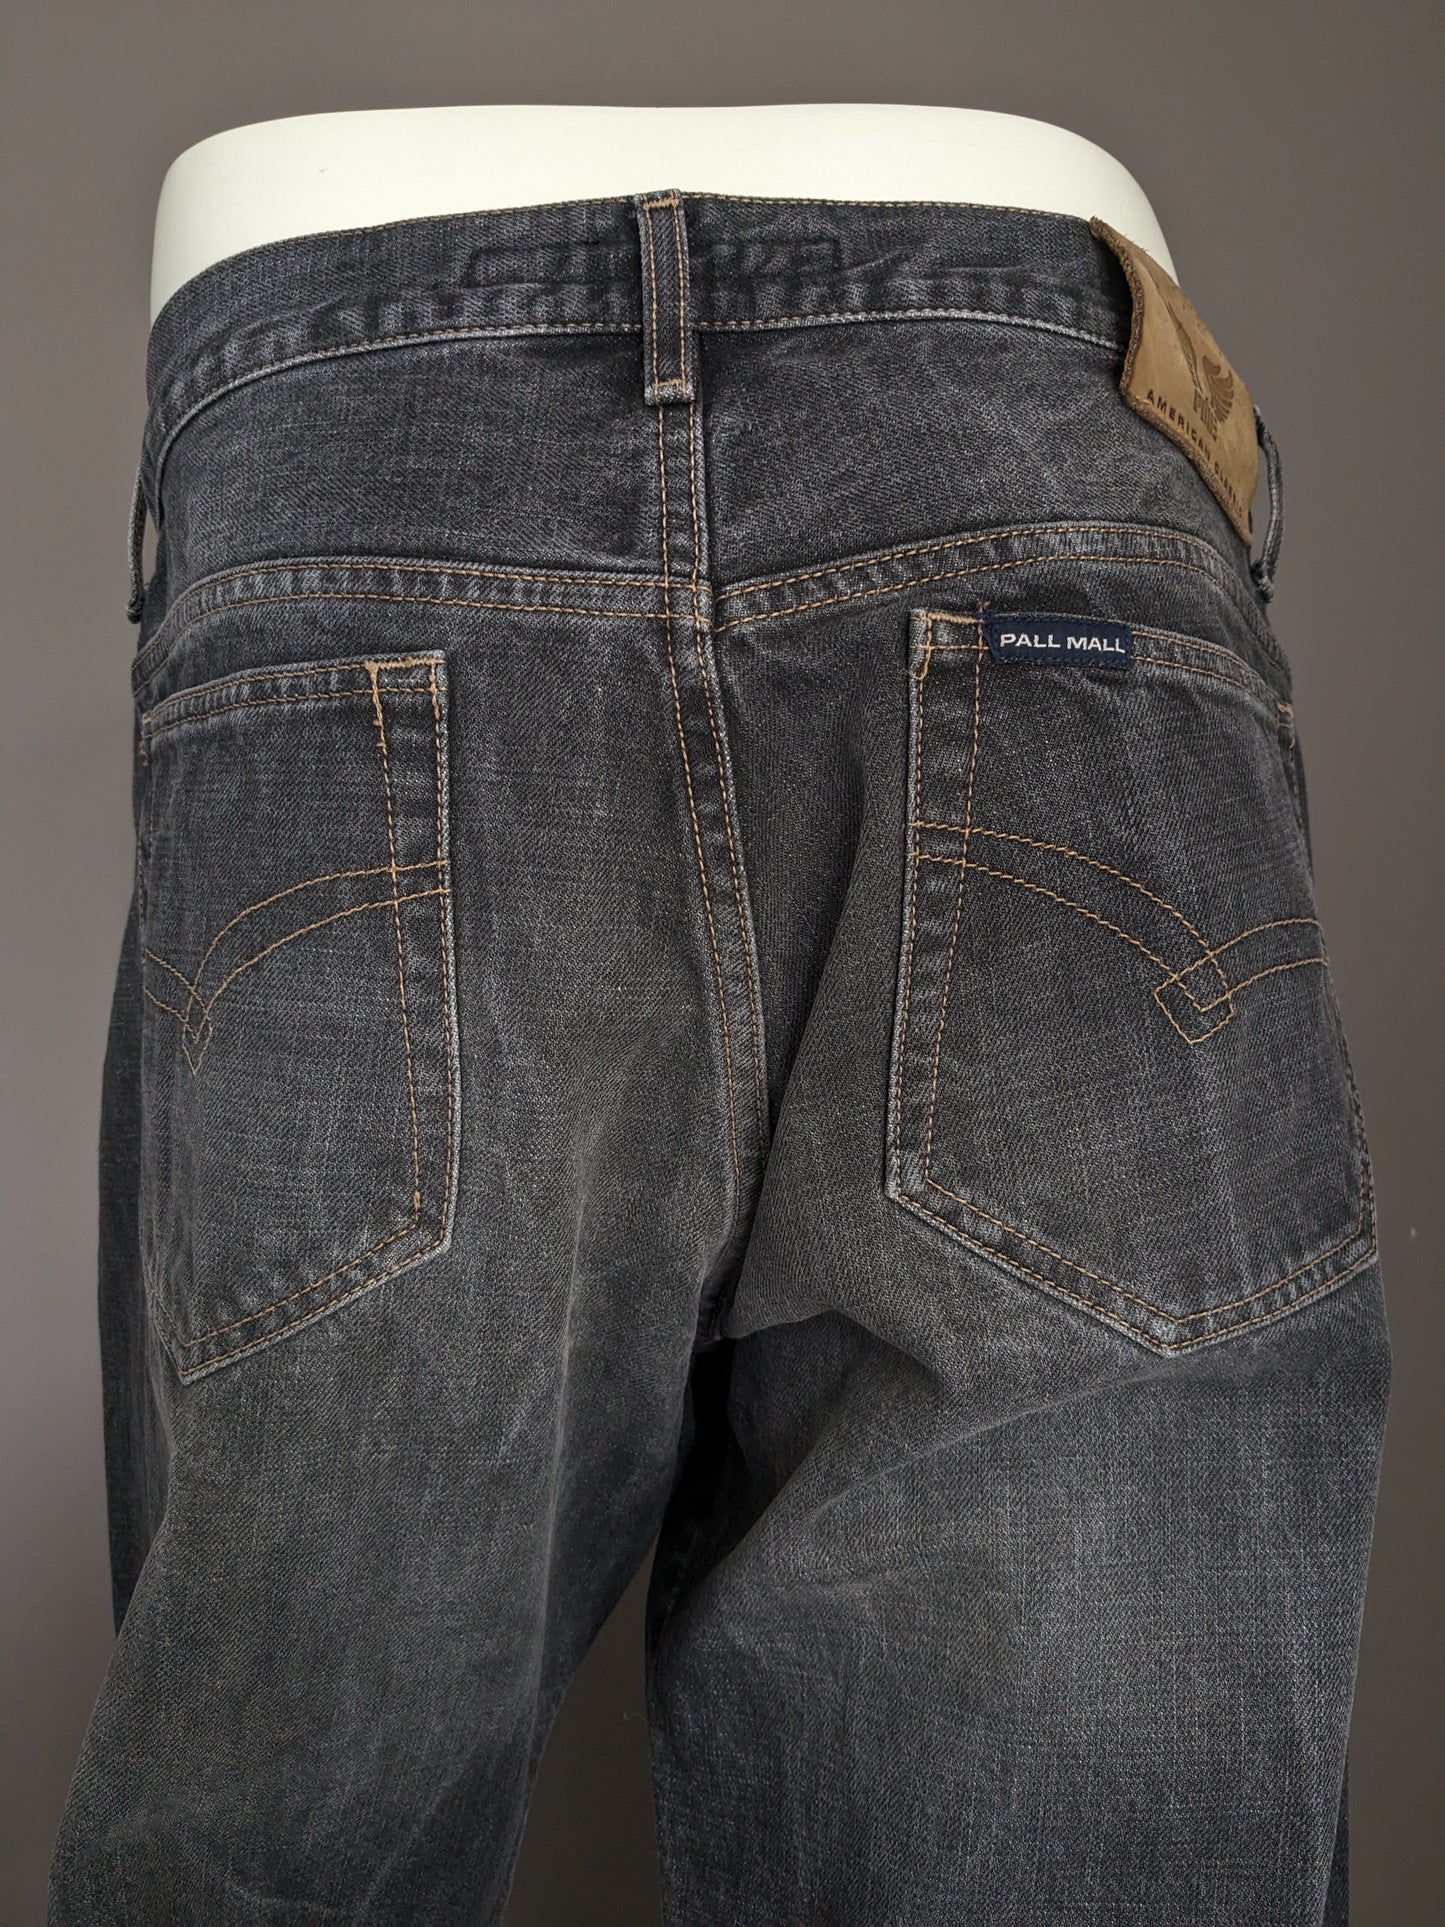 Jeans PME / Pall Mall. Grigio nero miscelato. Taglia W36 - L32. Tipo "Dakota".